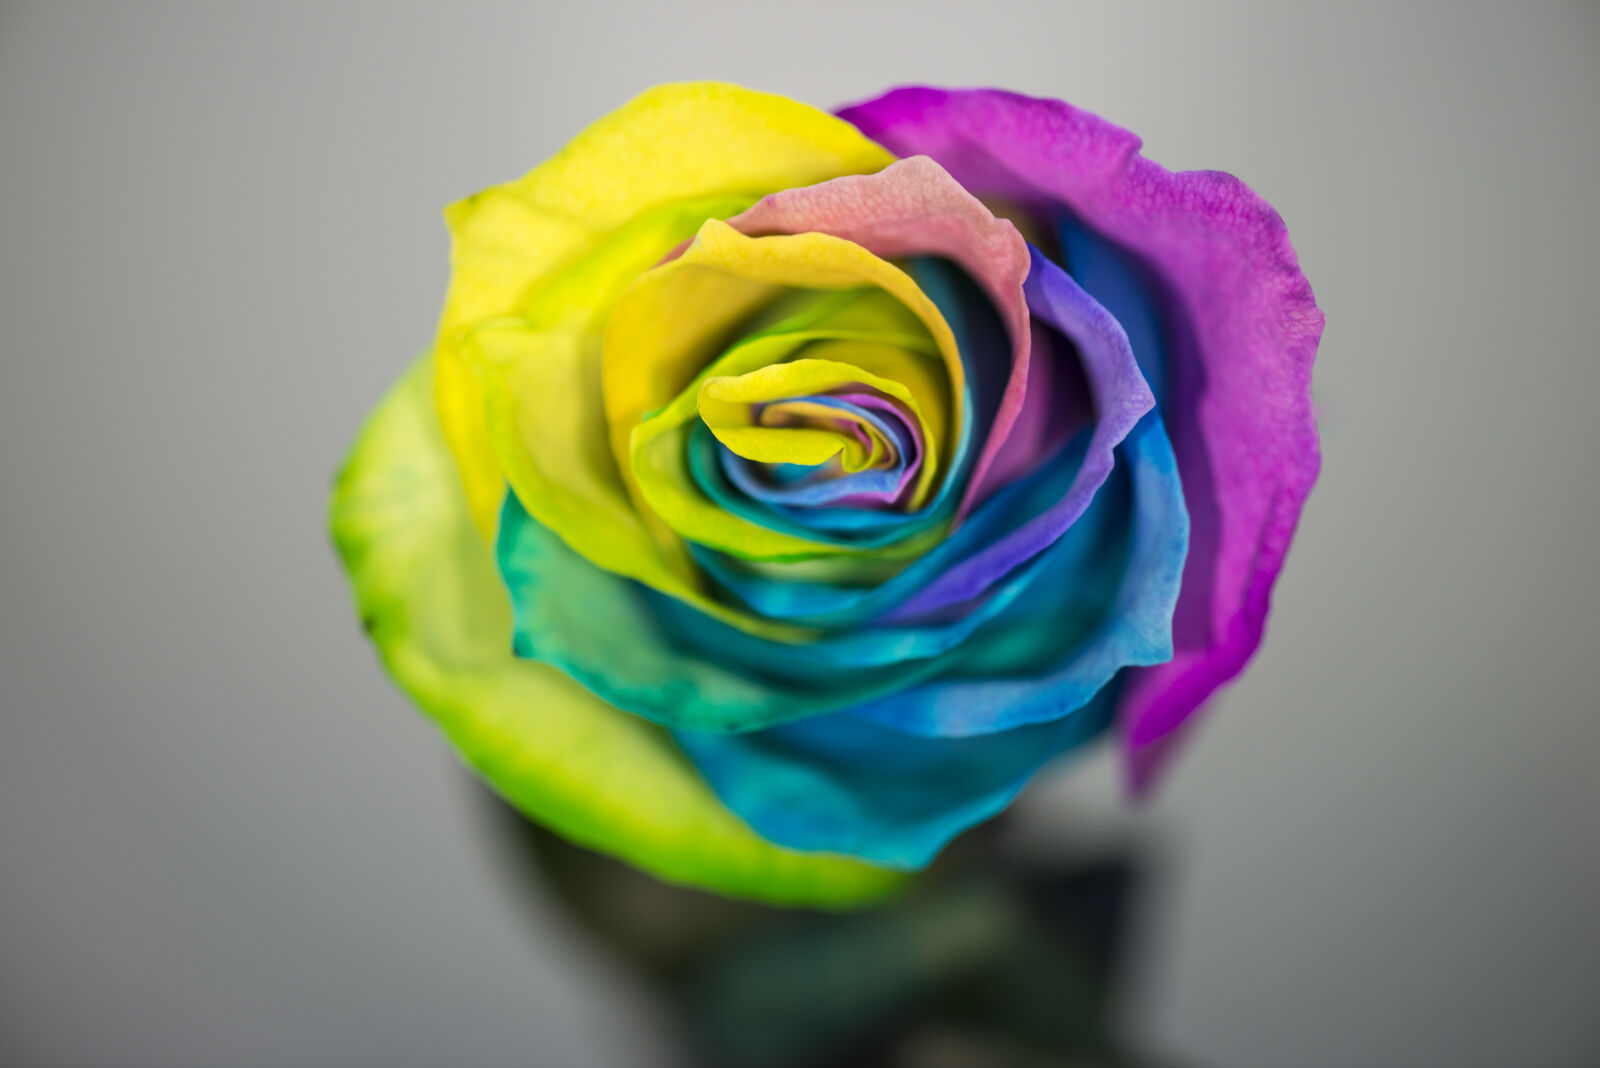 Nikon AF-S Micro-Nikkor 105mm F2.8G IF-ED VR sample photo. Colored, rose, flower, rose photography